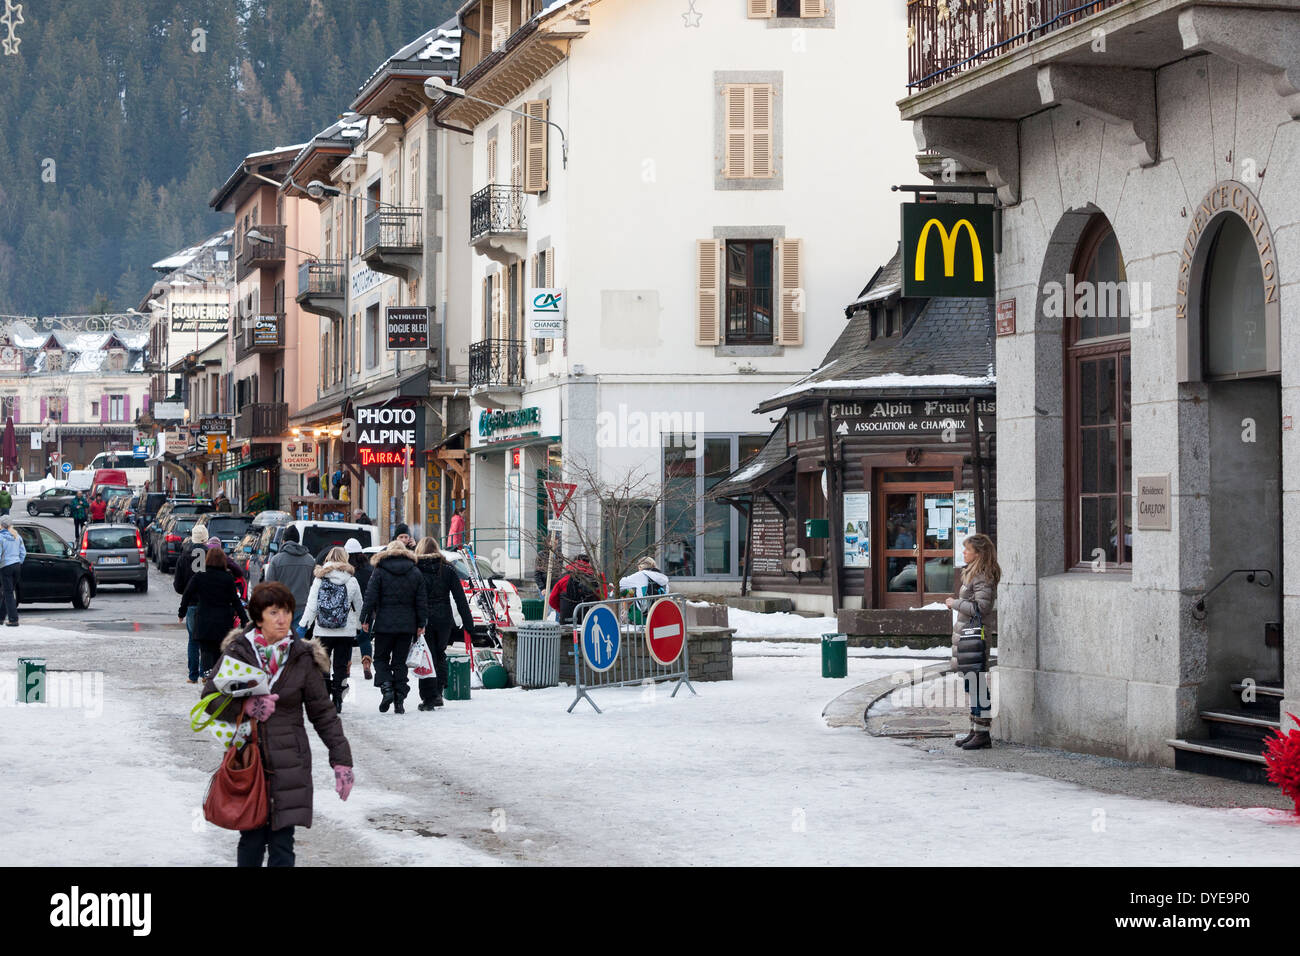 La franchise de restauration rapide MCDONALD'S dans le village de Chamonix Mont-Blanc. Banque D'Images